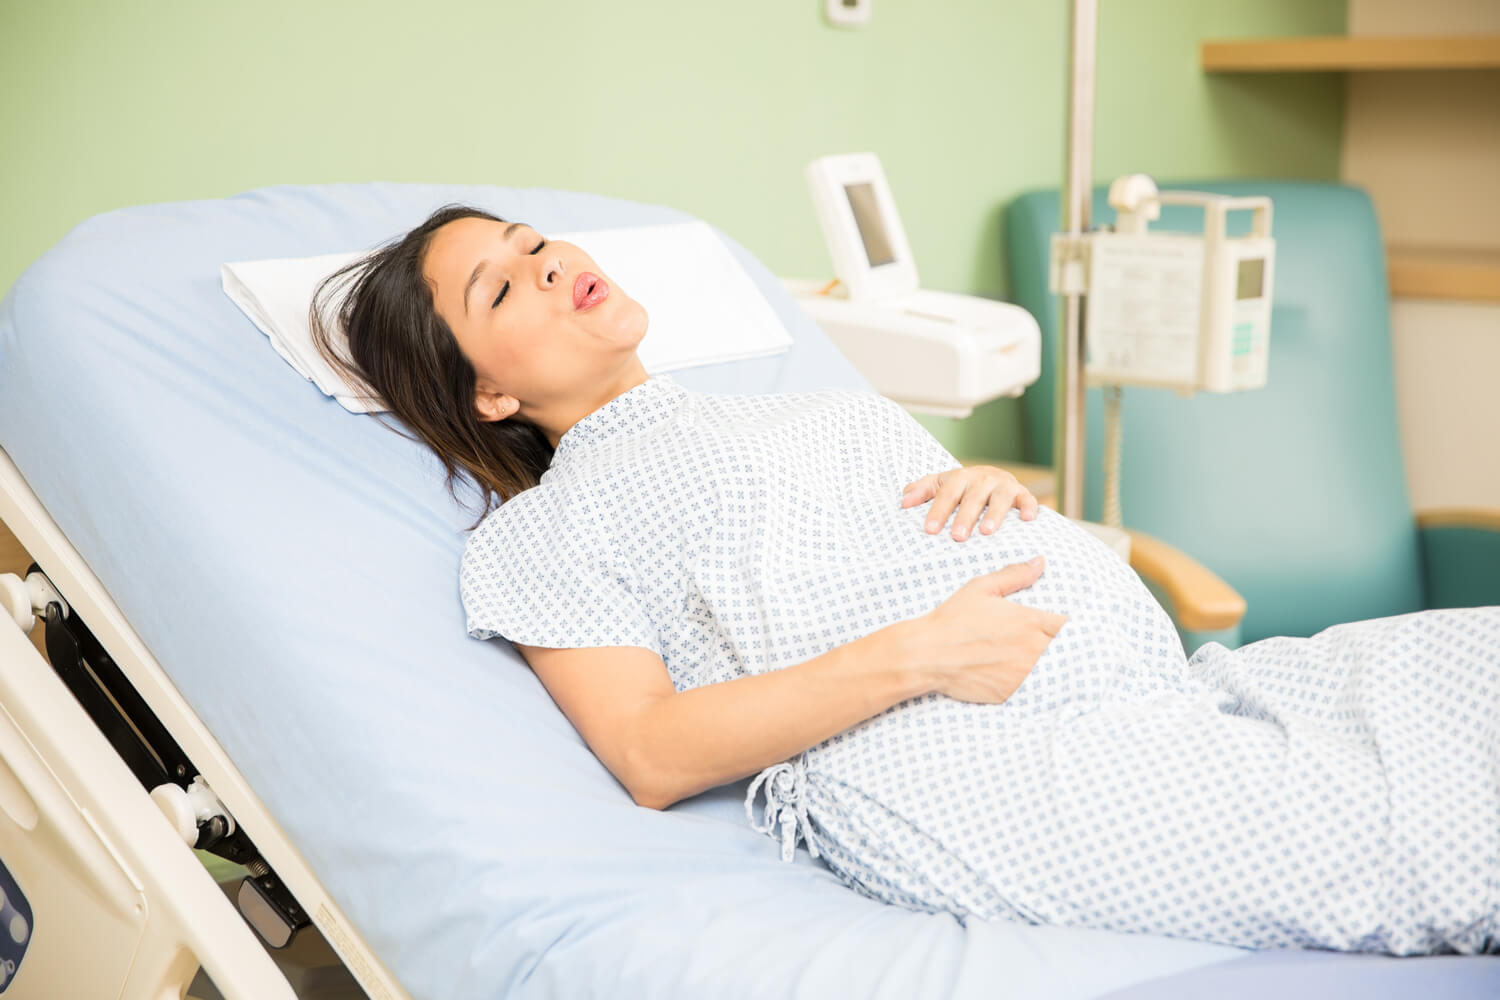 pregnant women in labor